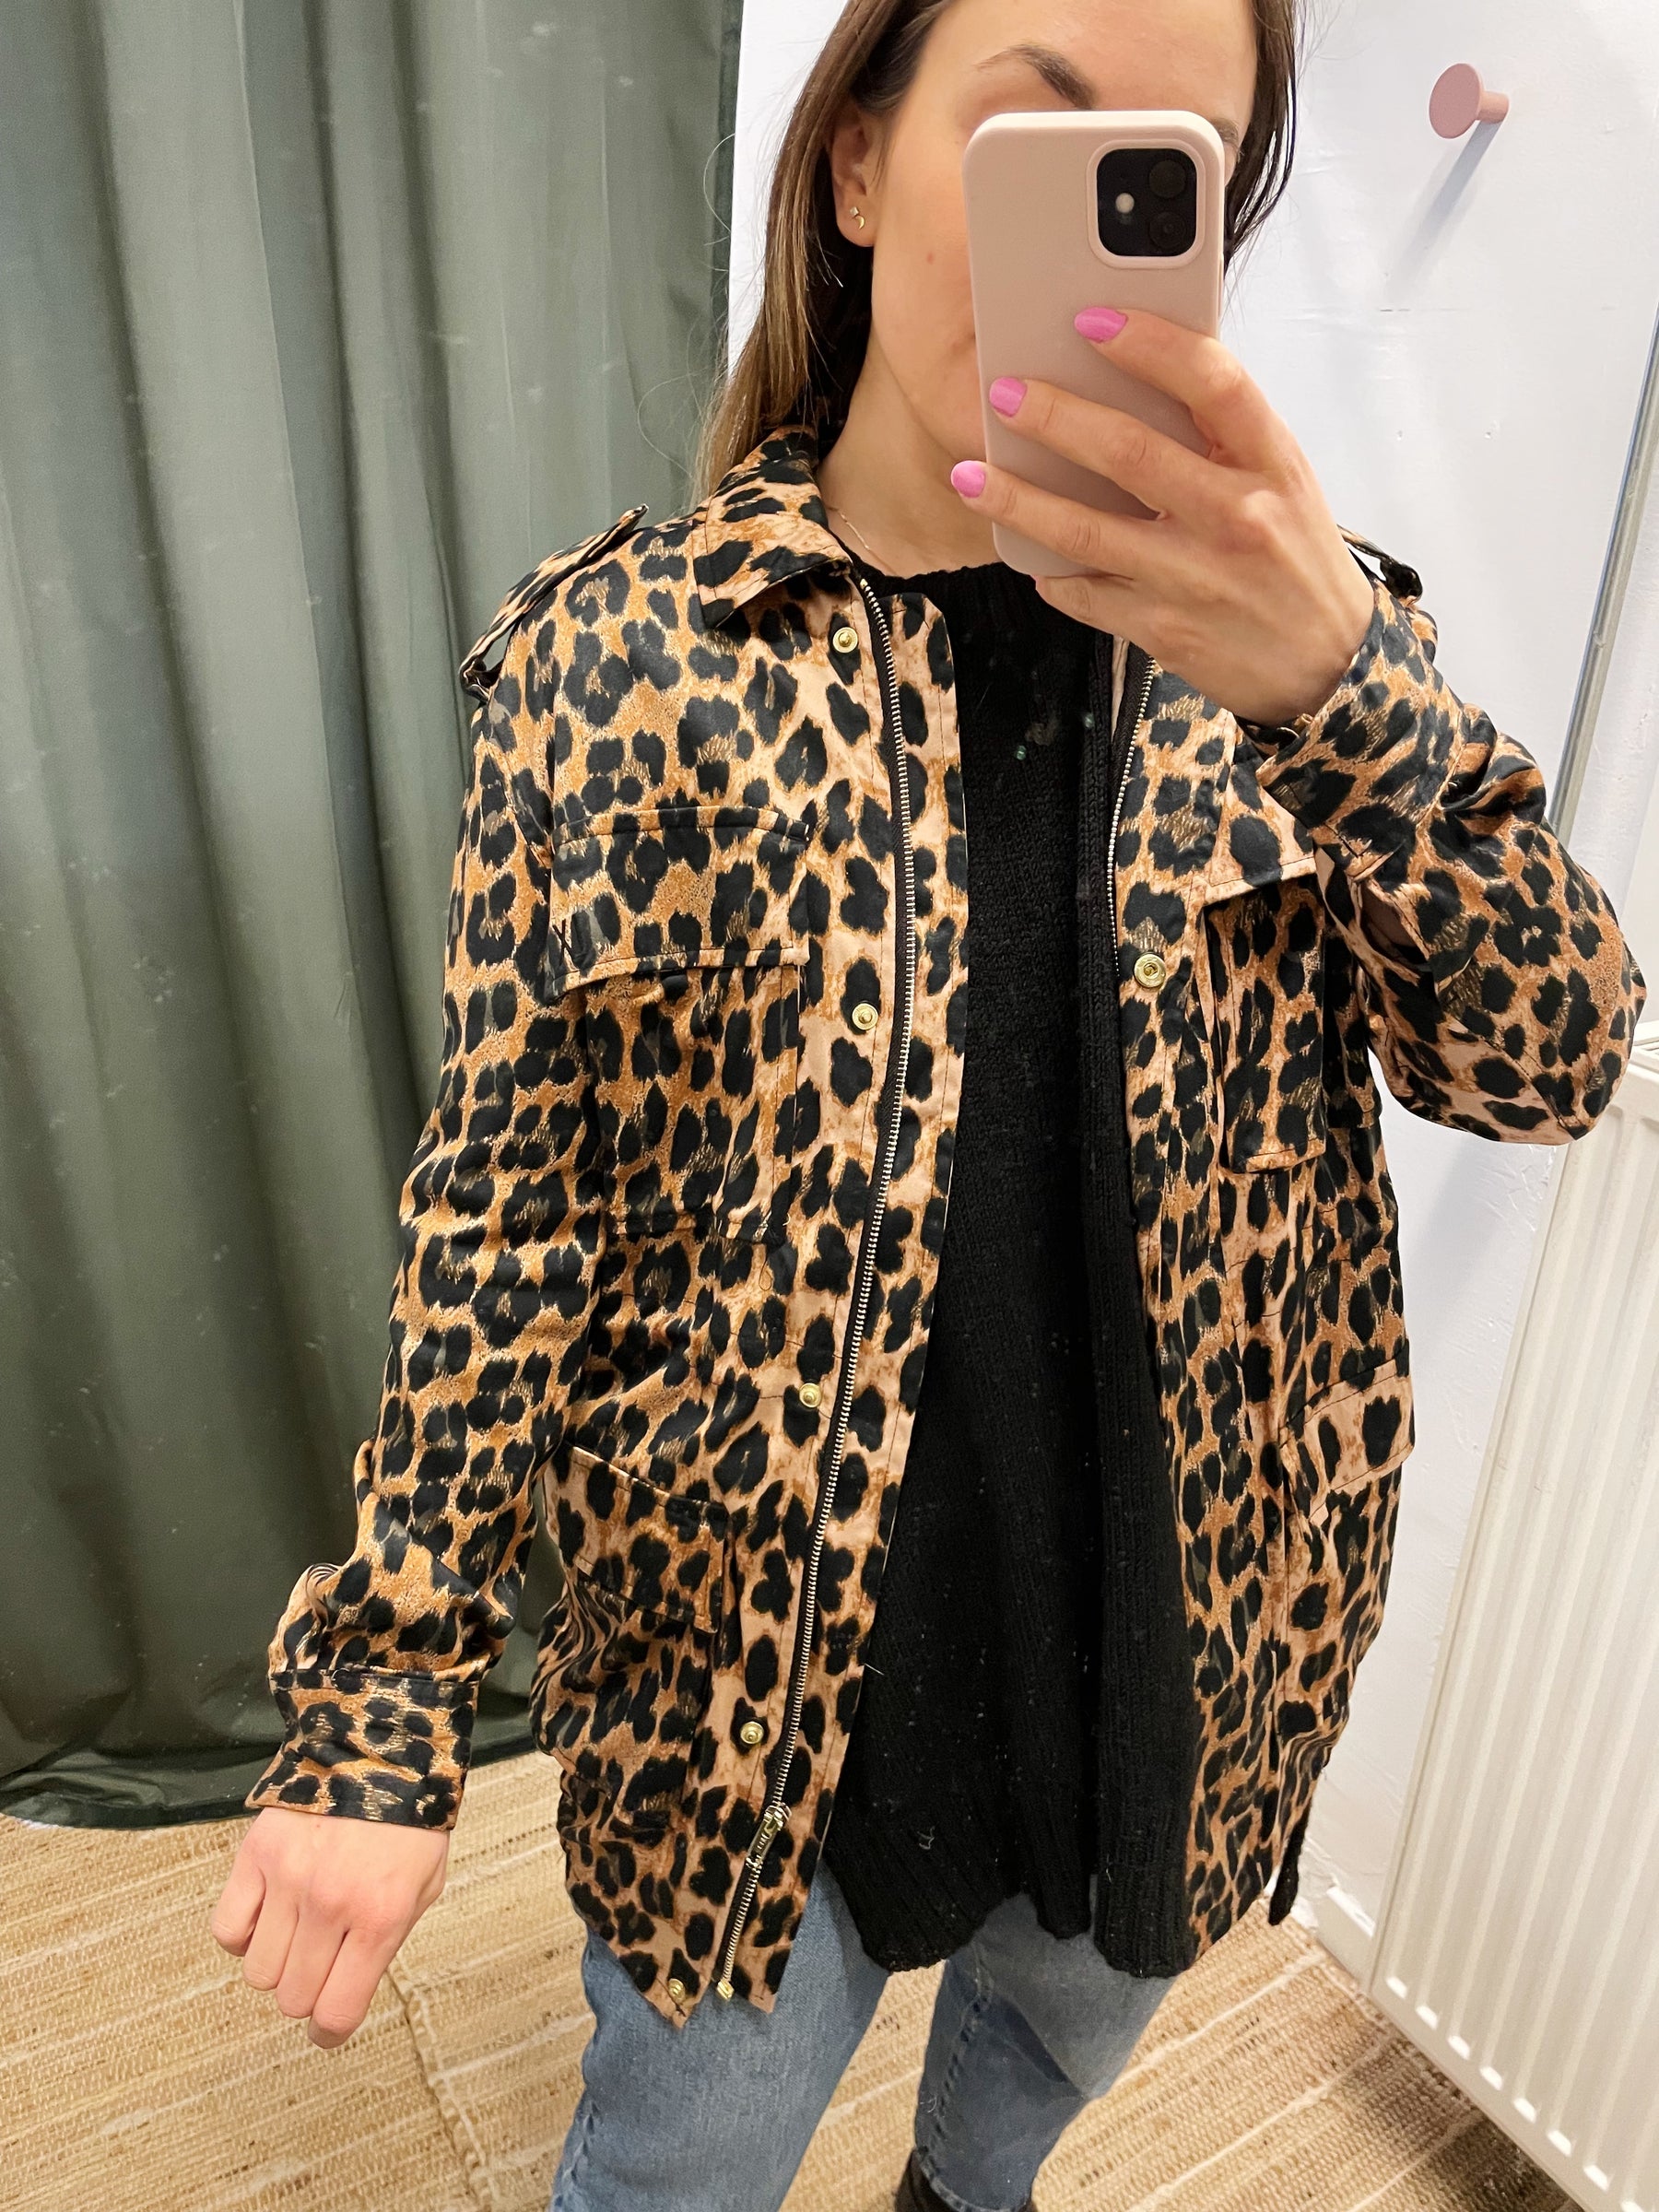 ALIX leopard jakke